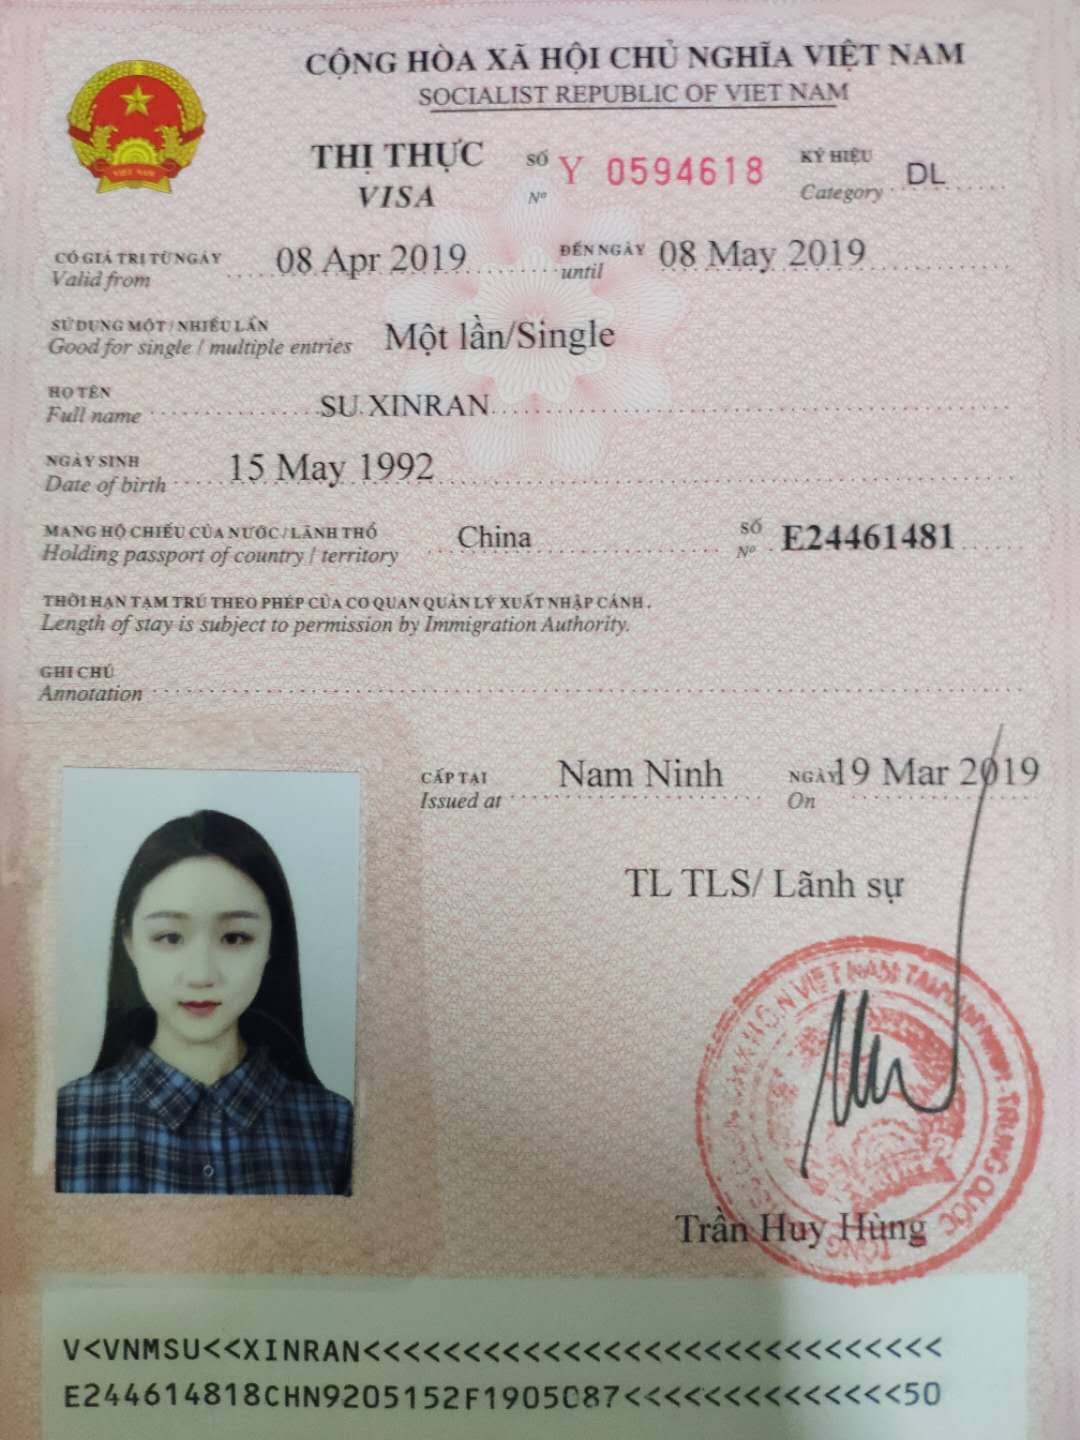 【中国人的越南电子签证飞往金兰机场 2023】中国公民如何申请越南电子签证进入金兰机场 | Vietnamimmigration.com ...